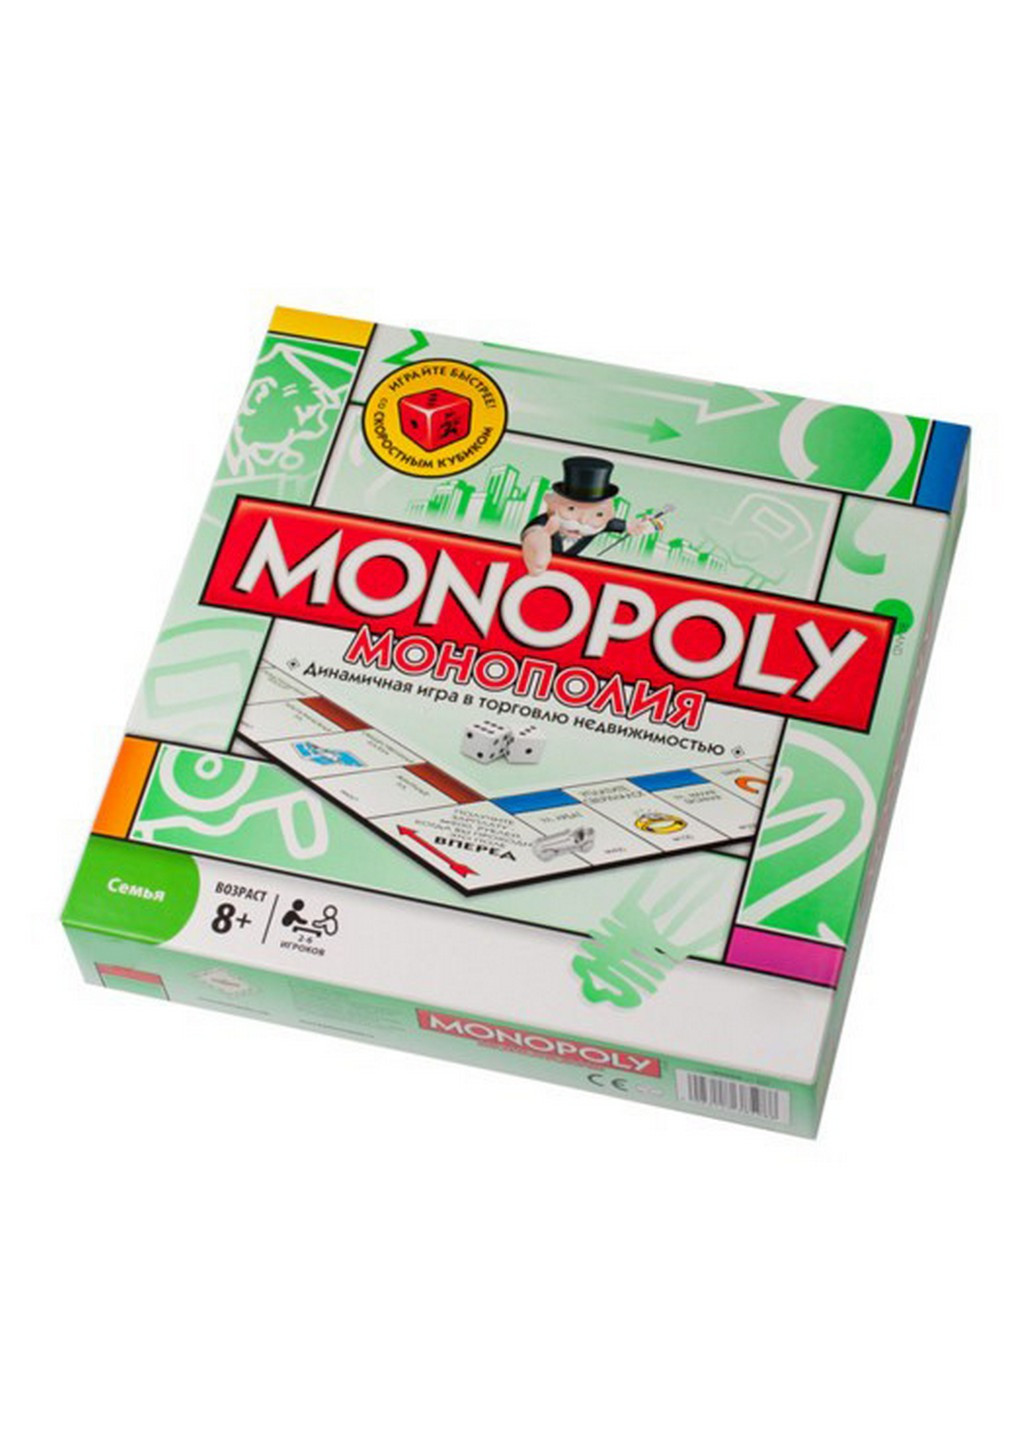 Настольная игра Монополия на русском языке 27х27х5 см Joy Toy (259247761)